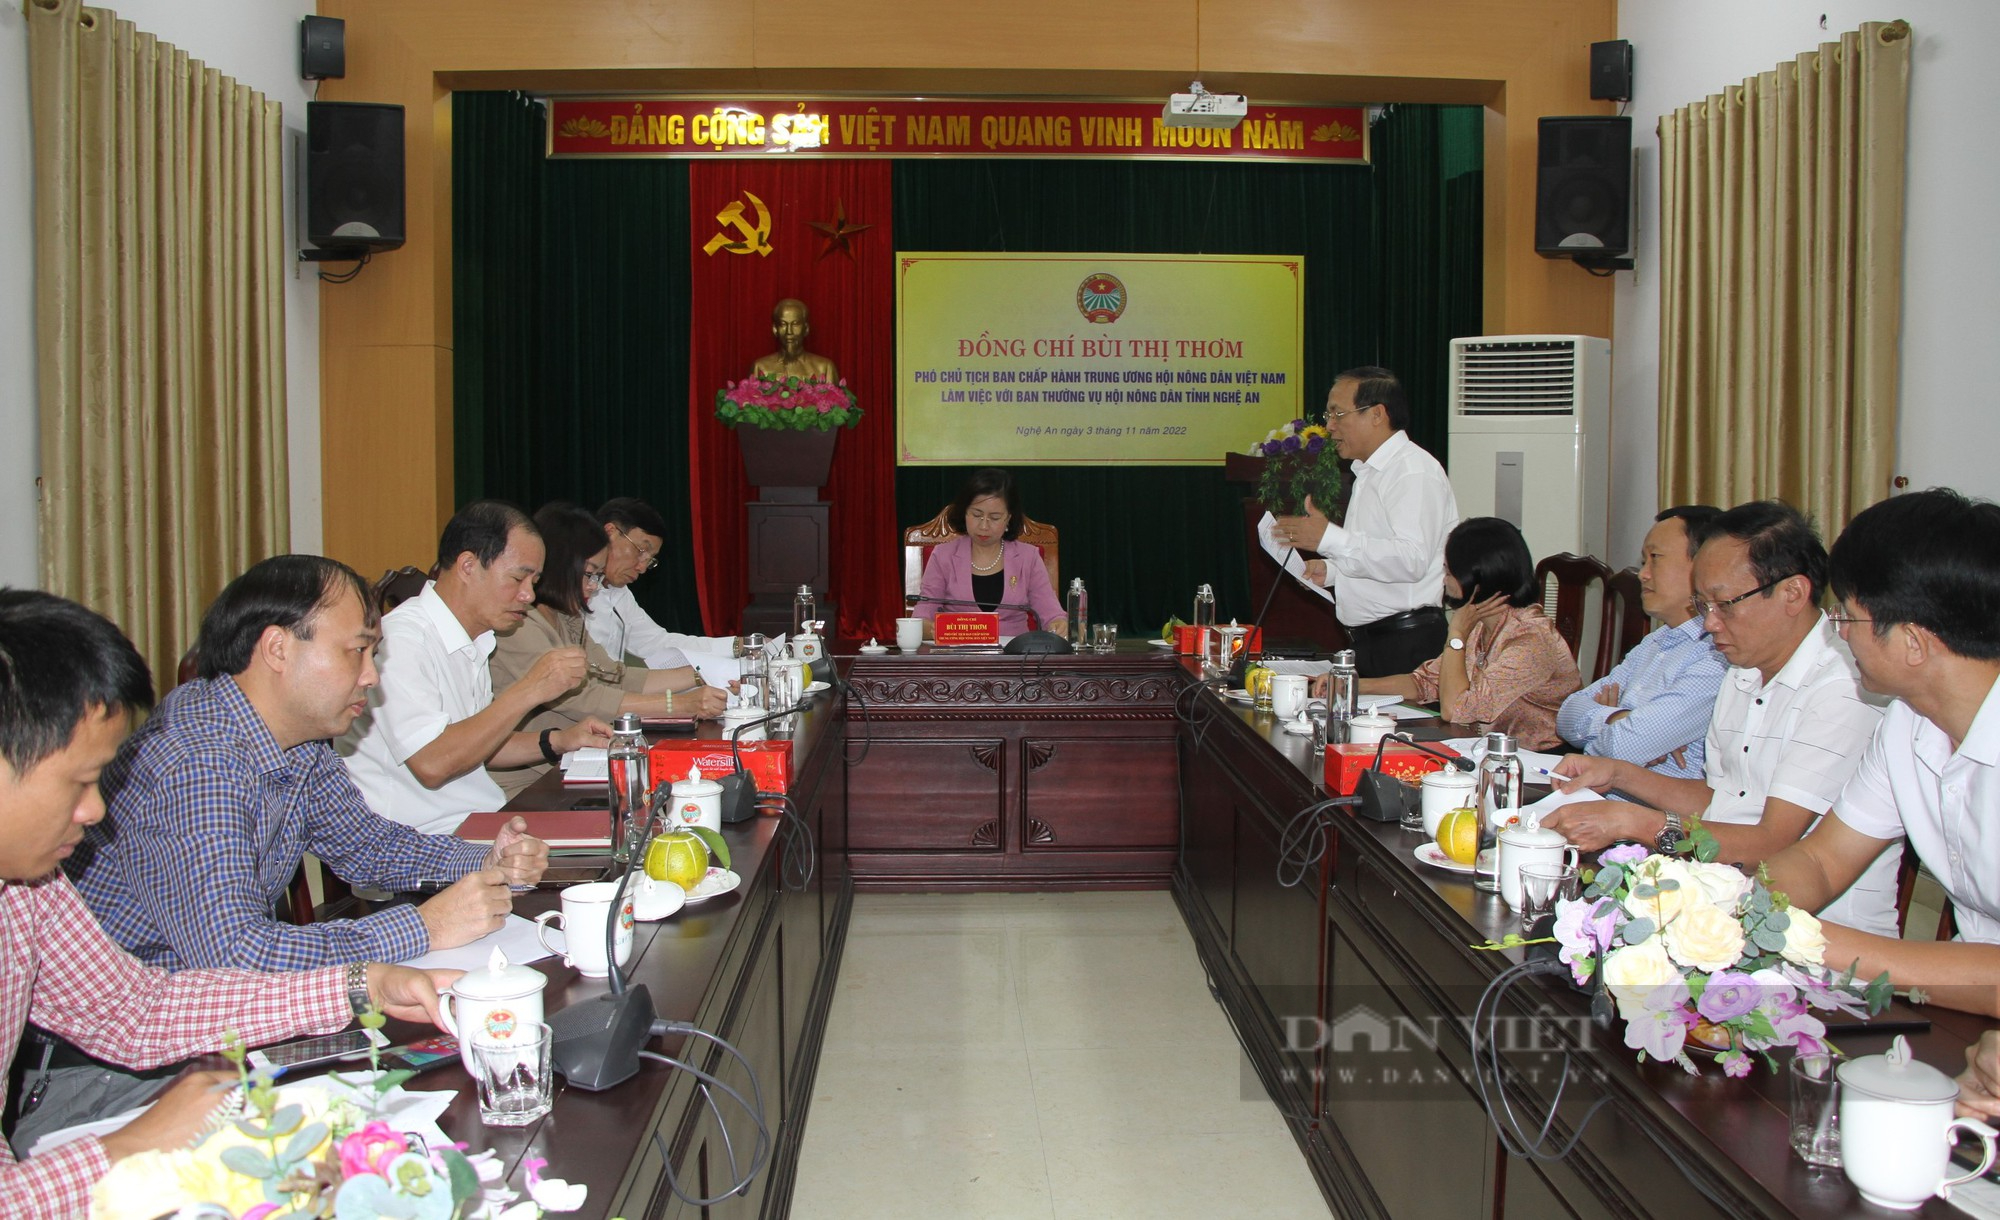 Phó Chủ tịch Trung ương Hội NDVN Bùi Thị Thơm: Thay đổi tư duy sẽ giúp nông dân Nghệ An nâng cao thu nhập- Ảnh 4.